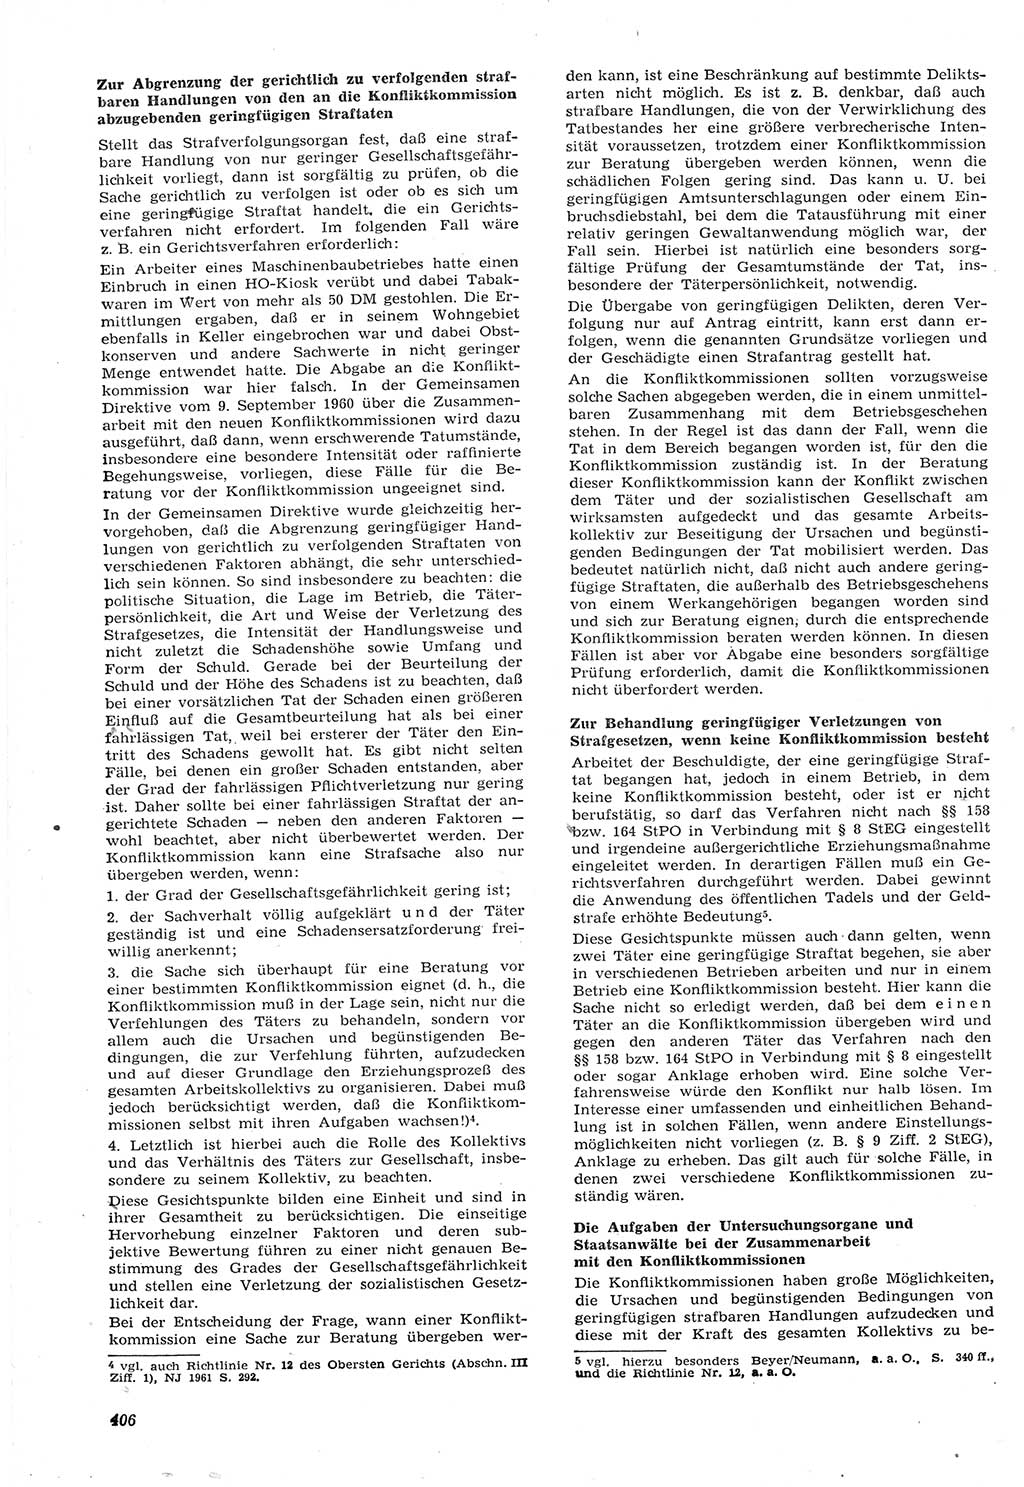 Neue Justiz (NJ), Zeitschrift für Recht und Rechtswissenschaft [Deutsche Demokratische Republik (DDR)], 15. Jahrgang 1961, Seite 406 (NJ DDR 1961, S. 406)